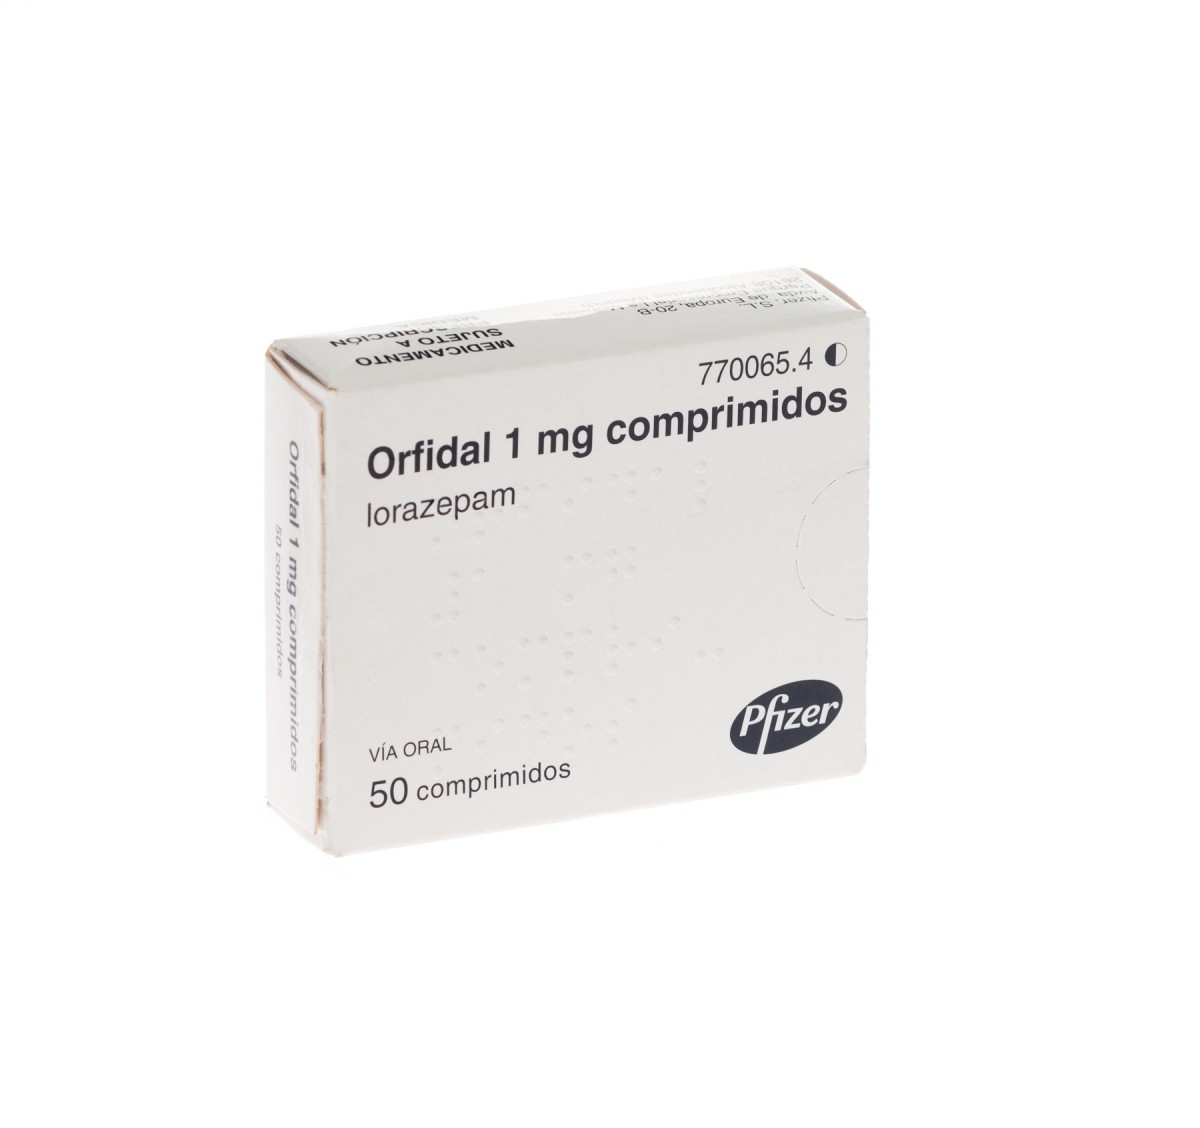 ORFIDAL 1 mg COMPRIMIDOS, 25 comprimidos fotografía del envase.